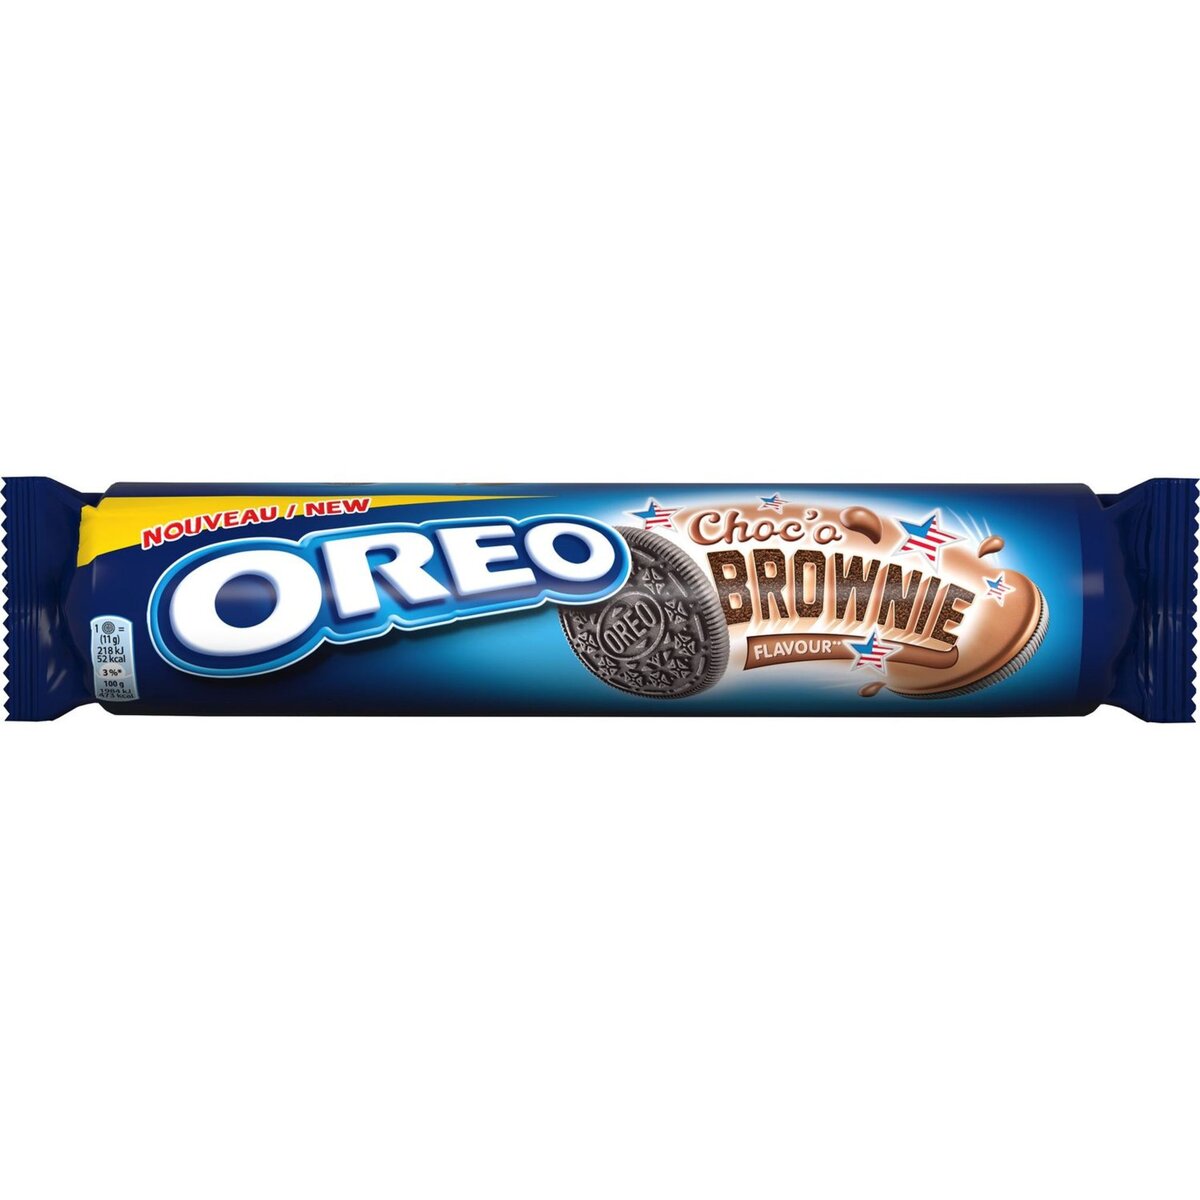 OREO Oréo chocolat brownie 154g